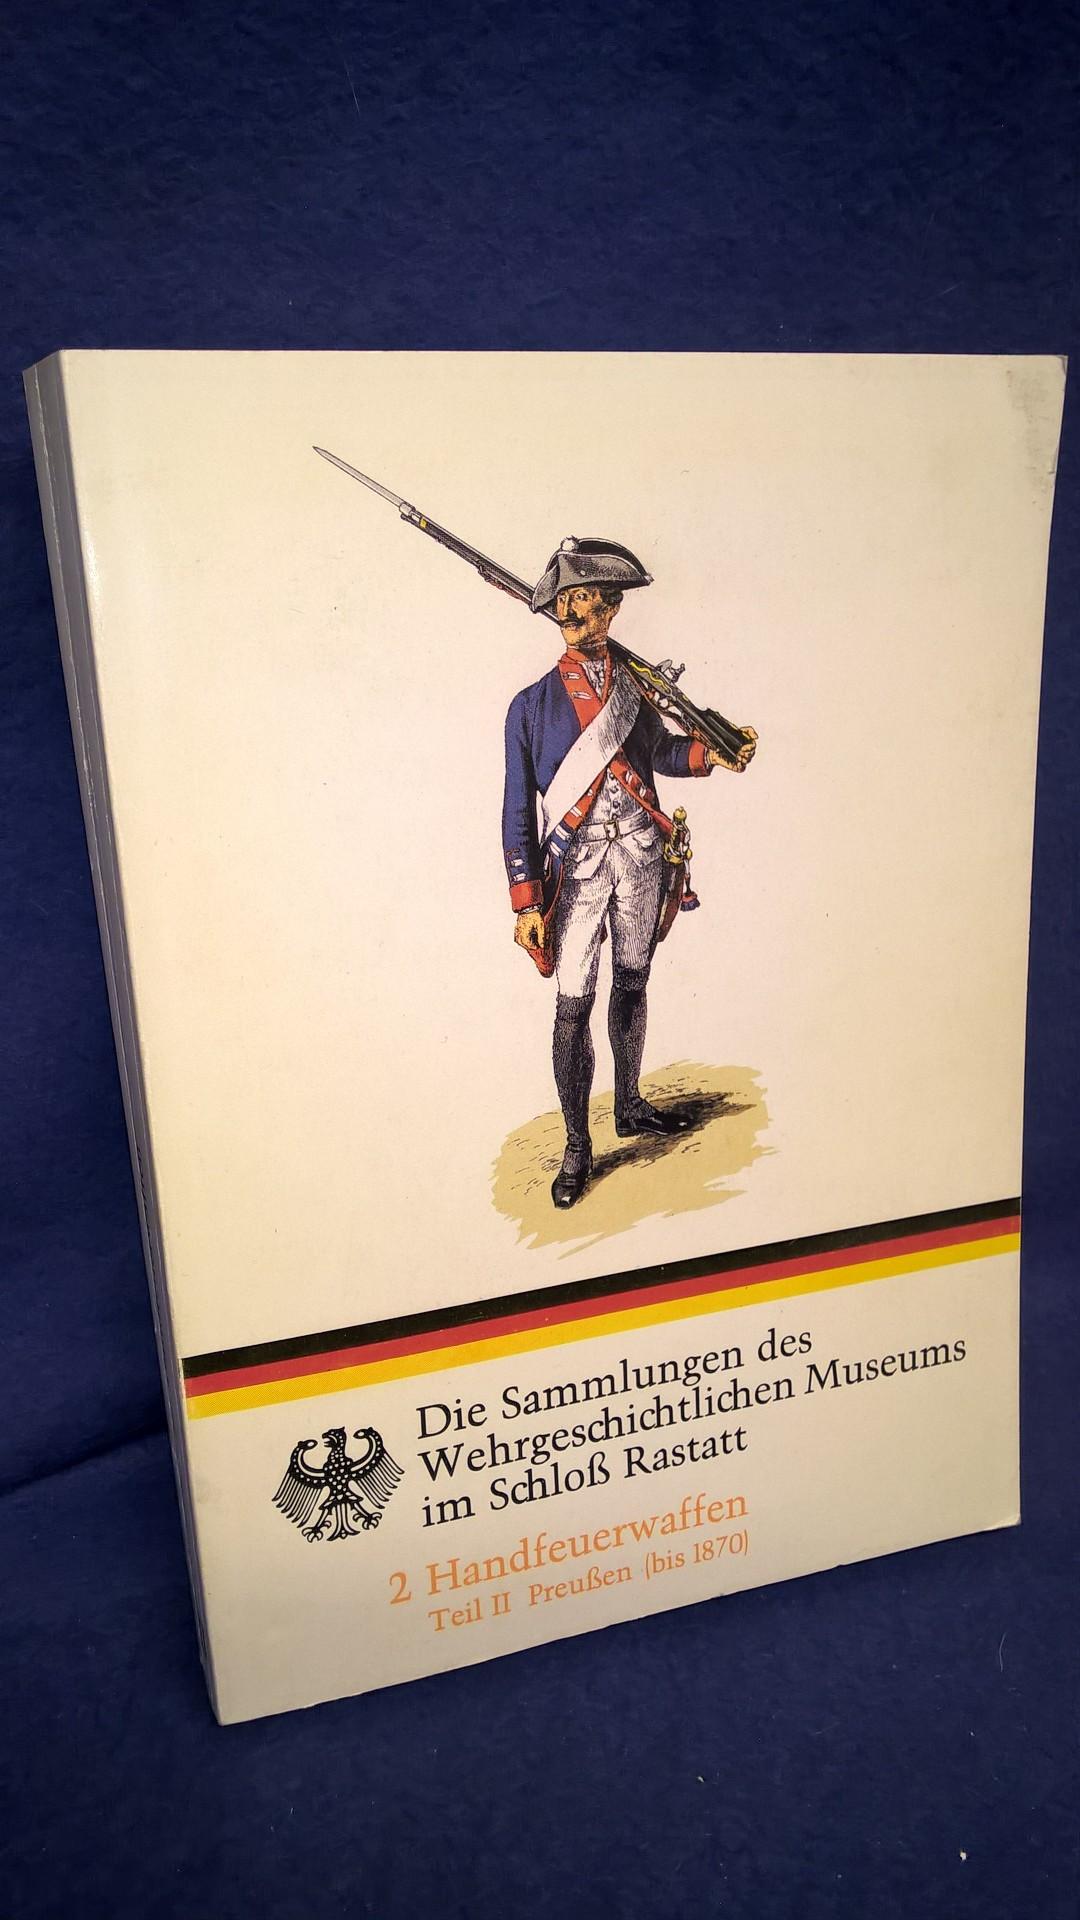 Die Sammlungen des Wehrgeschichtlichen Museums im Schloß Rastatt: Handfeuerwaffen Teil II: Preußen (bis 1870)